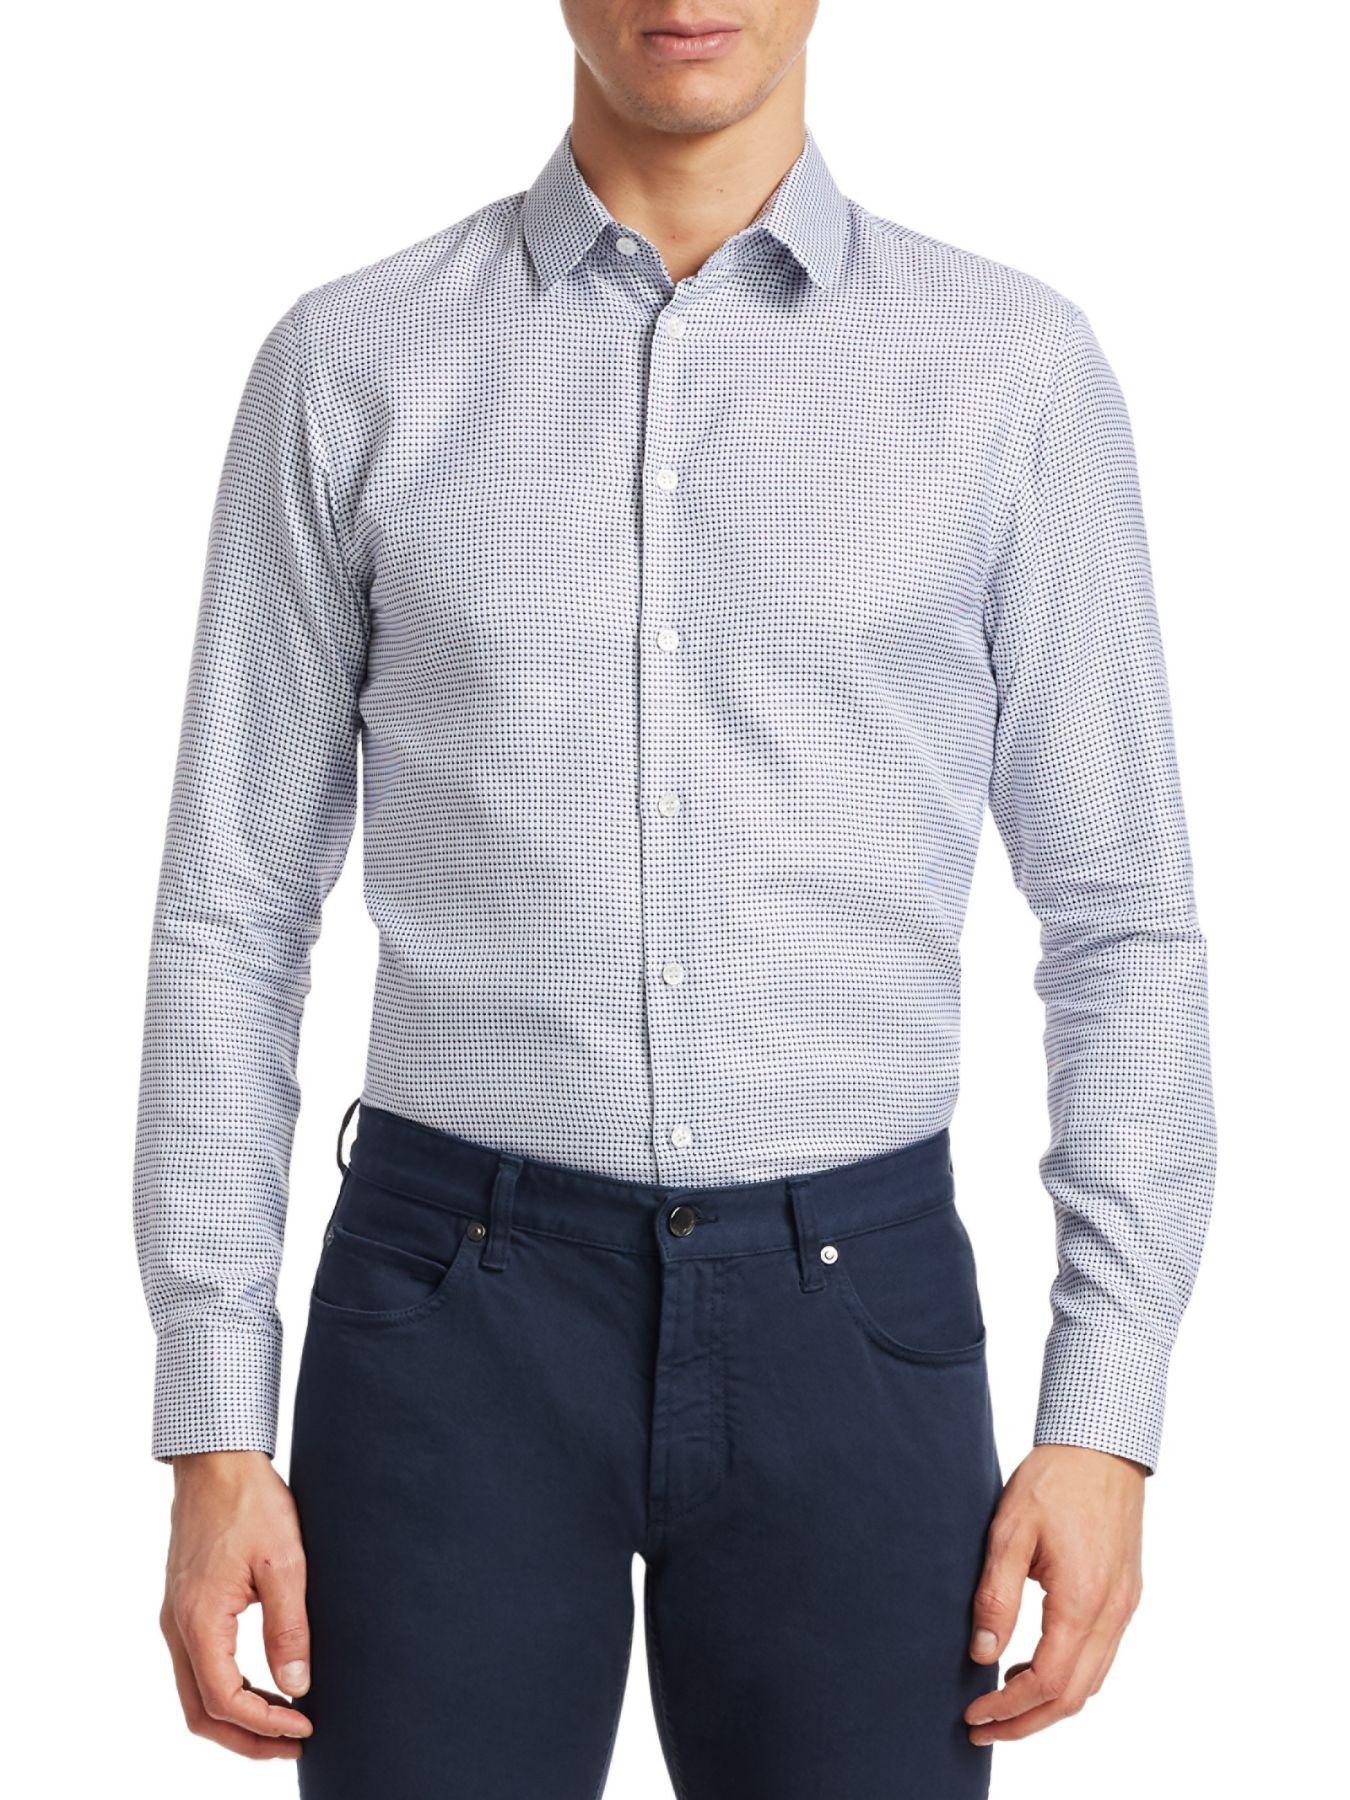 Giorgio Armani Cotton Geometric Button-down Shirt in Blue for Men - Lyst